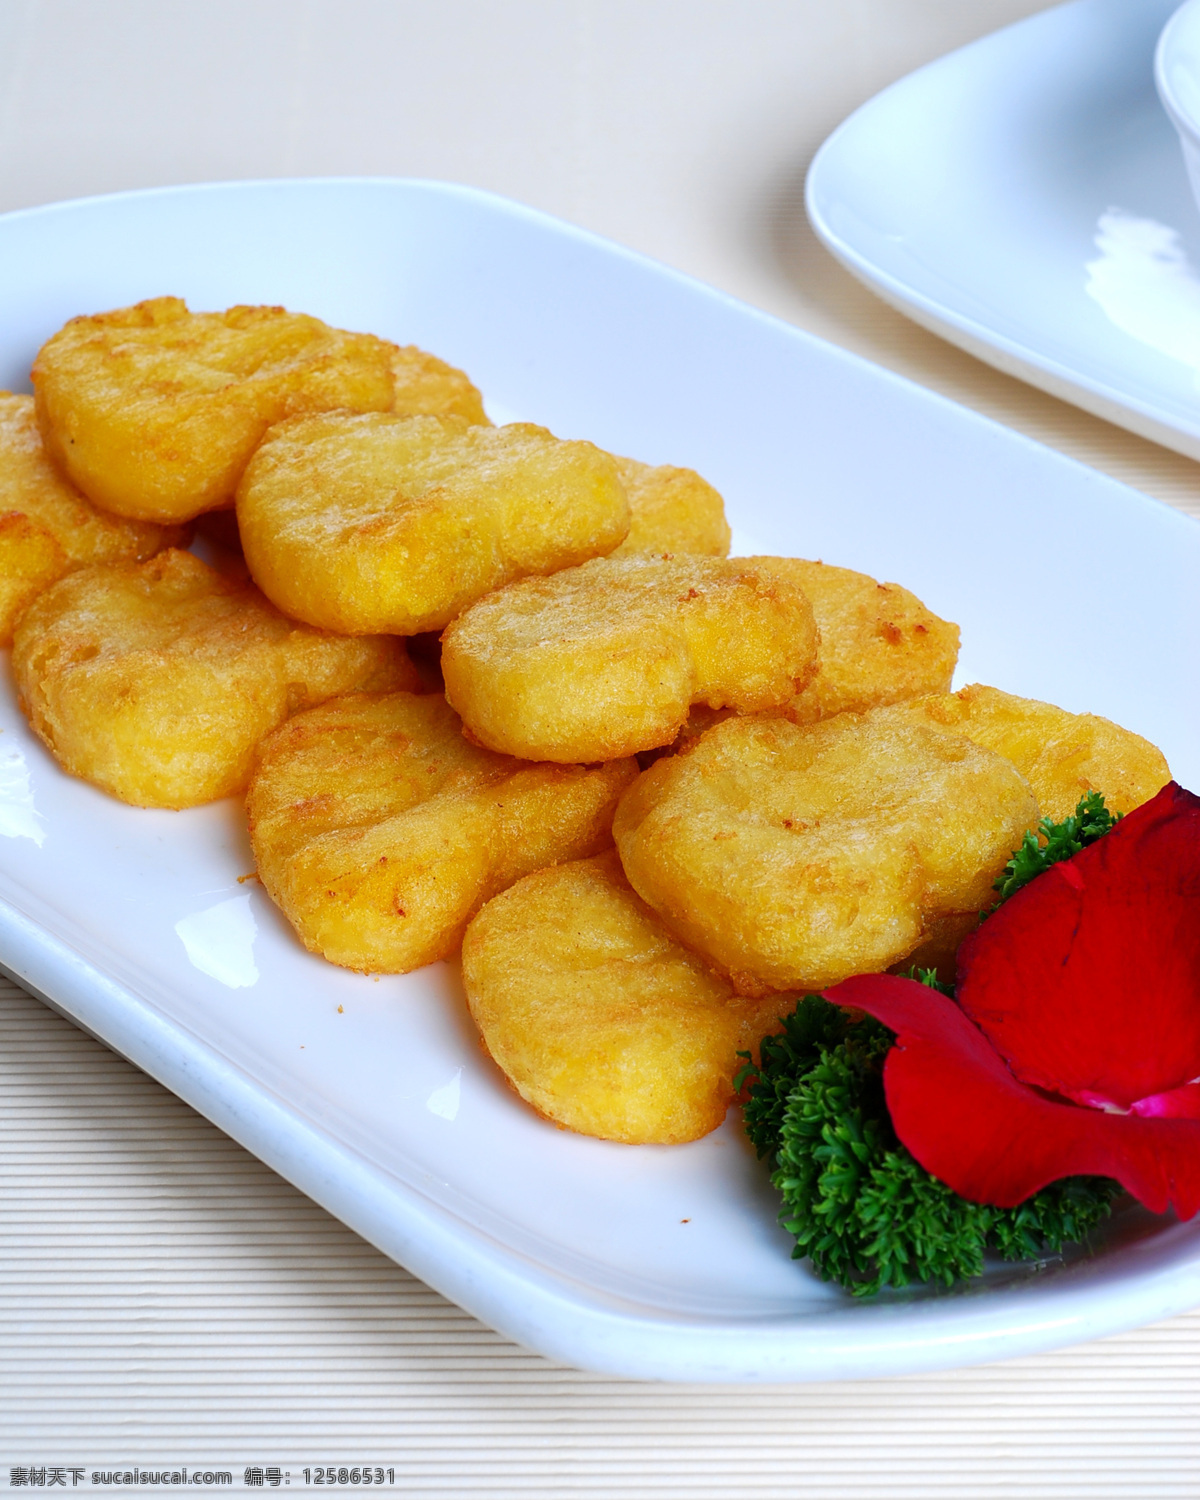 油炸 红薯 玉米饼 油炸红薯 特色 美味 风味 极品 自制 秘制 菜品图 餐饮美食 传统美食